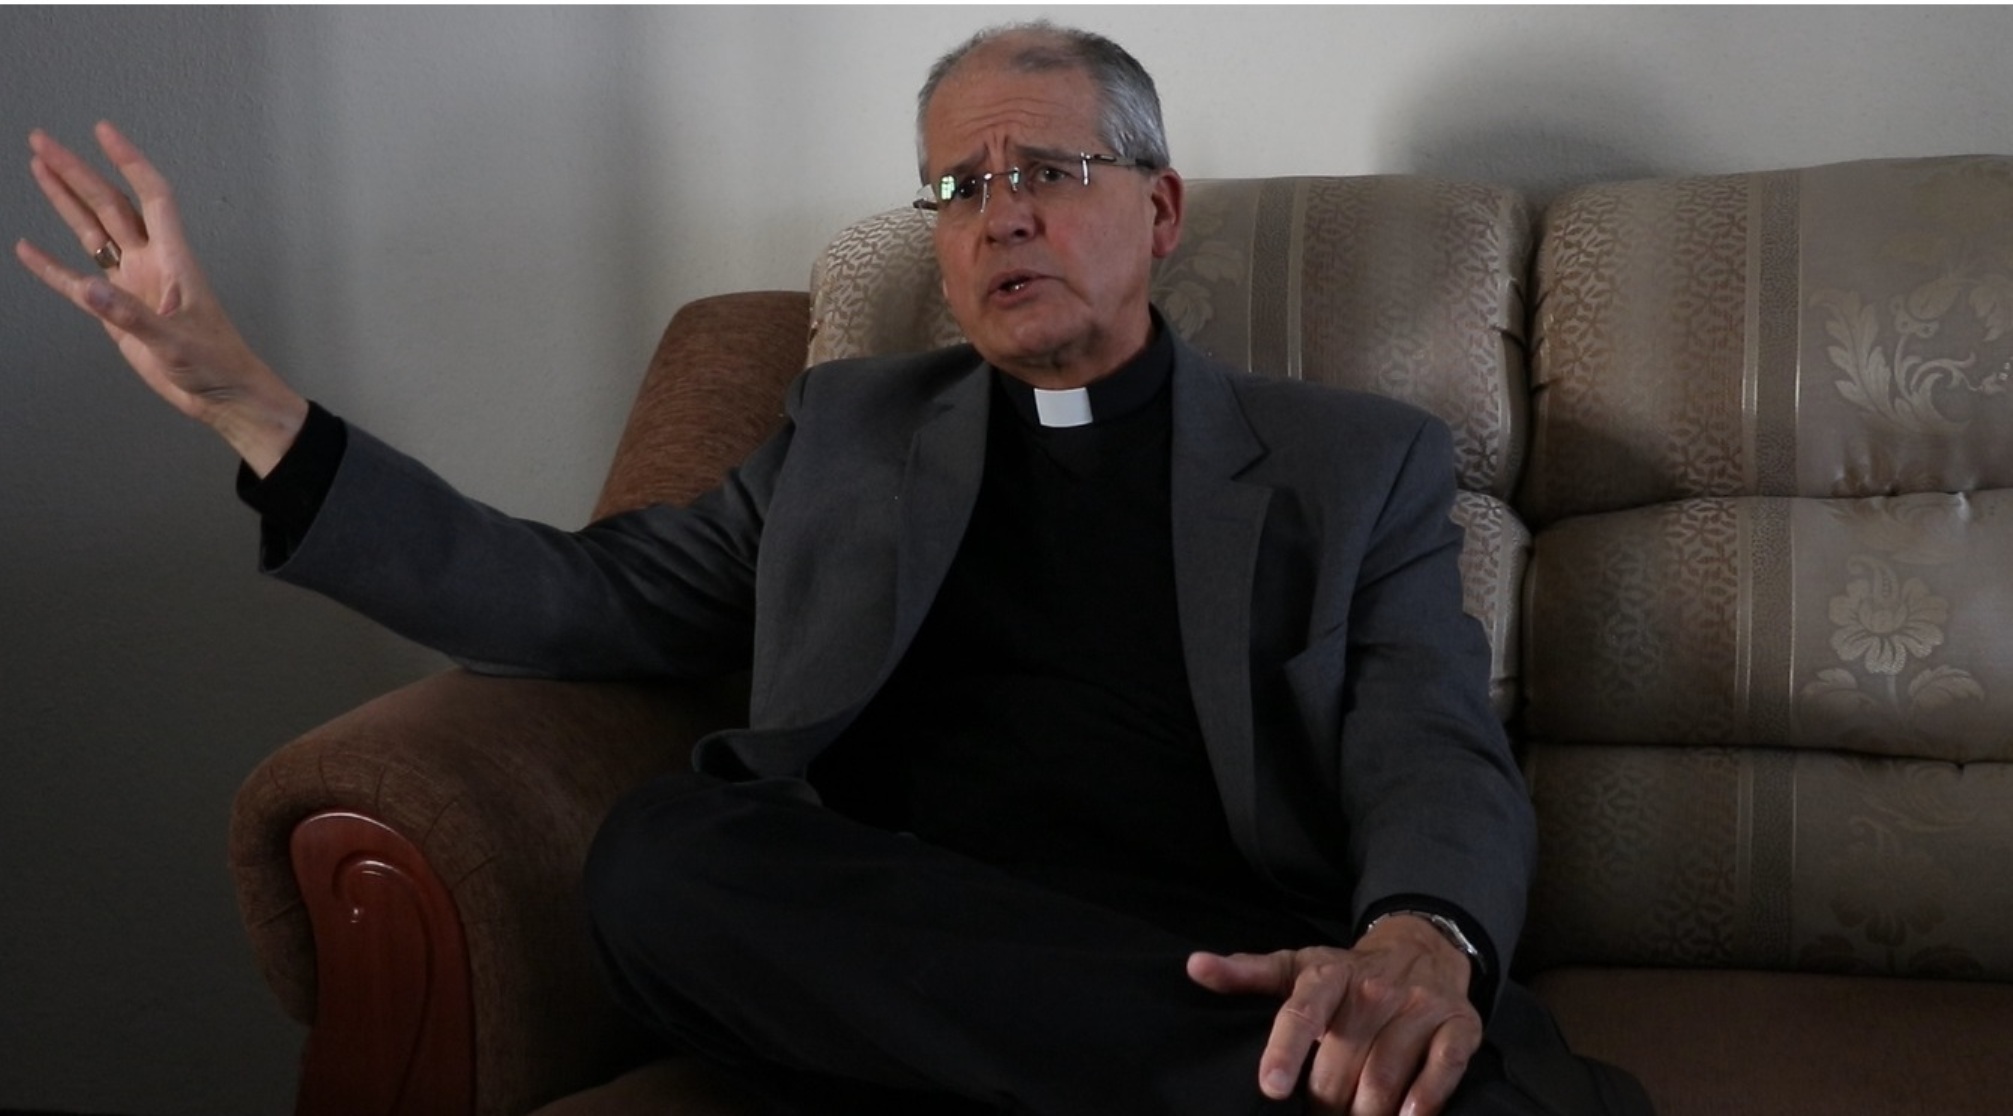 Arzobispo aseguró que no comprende por qué permitieron que el sacerdote salesiano oficiara la misa. (Foto Prensa Libare: María Longo)